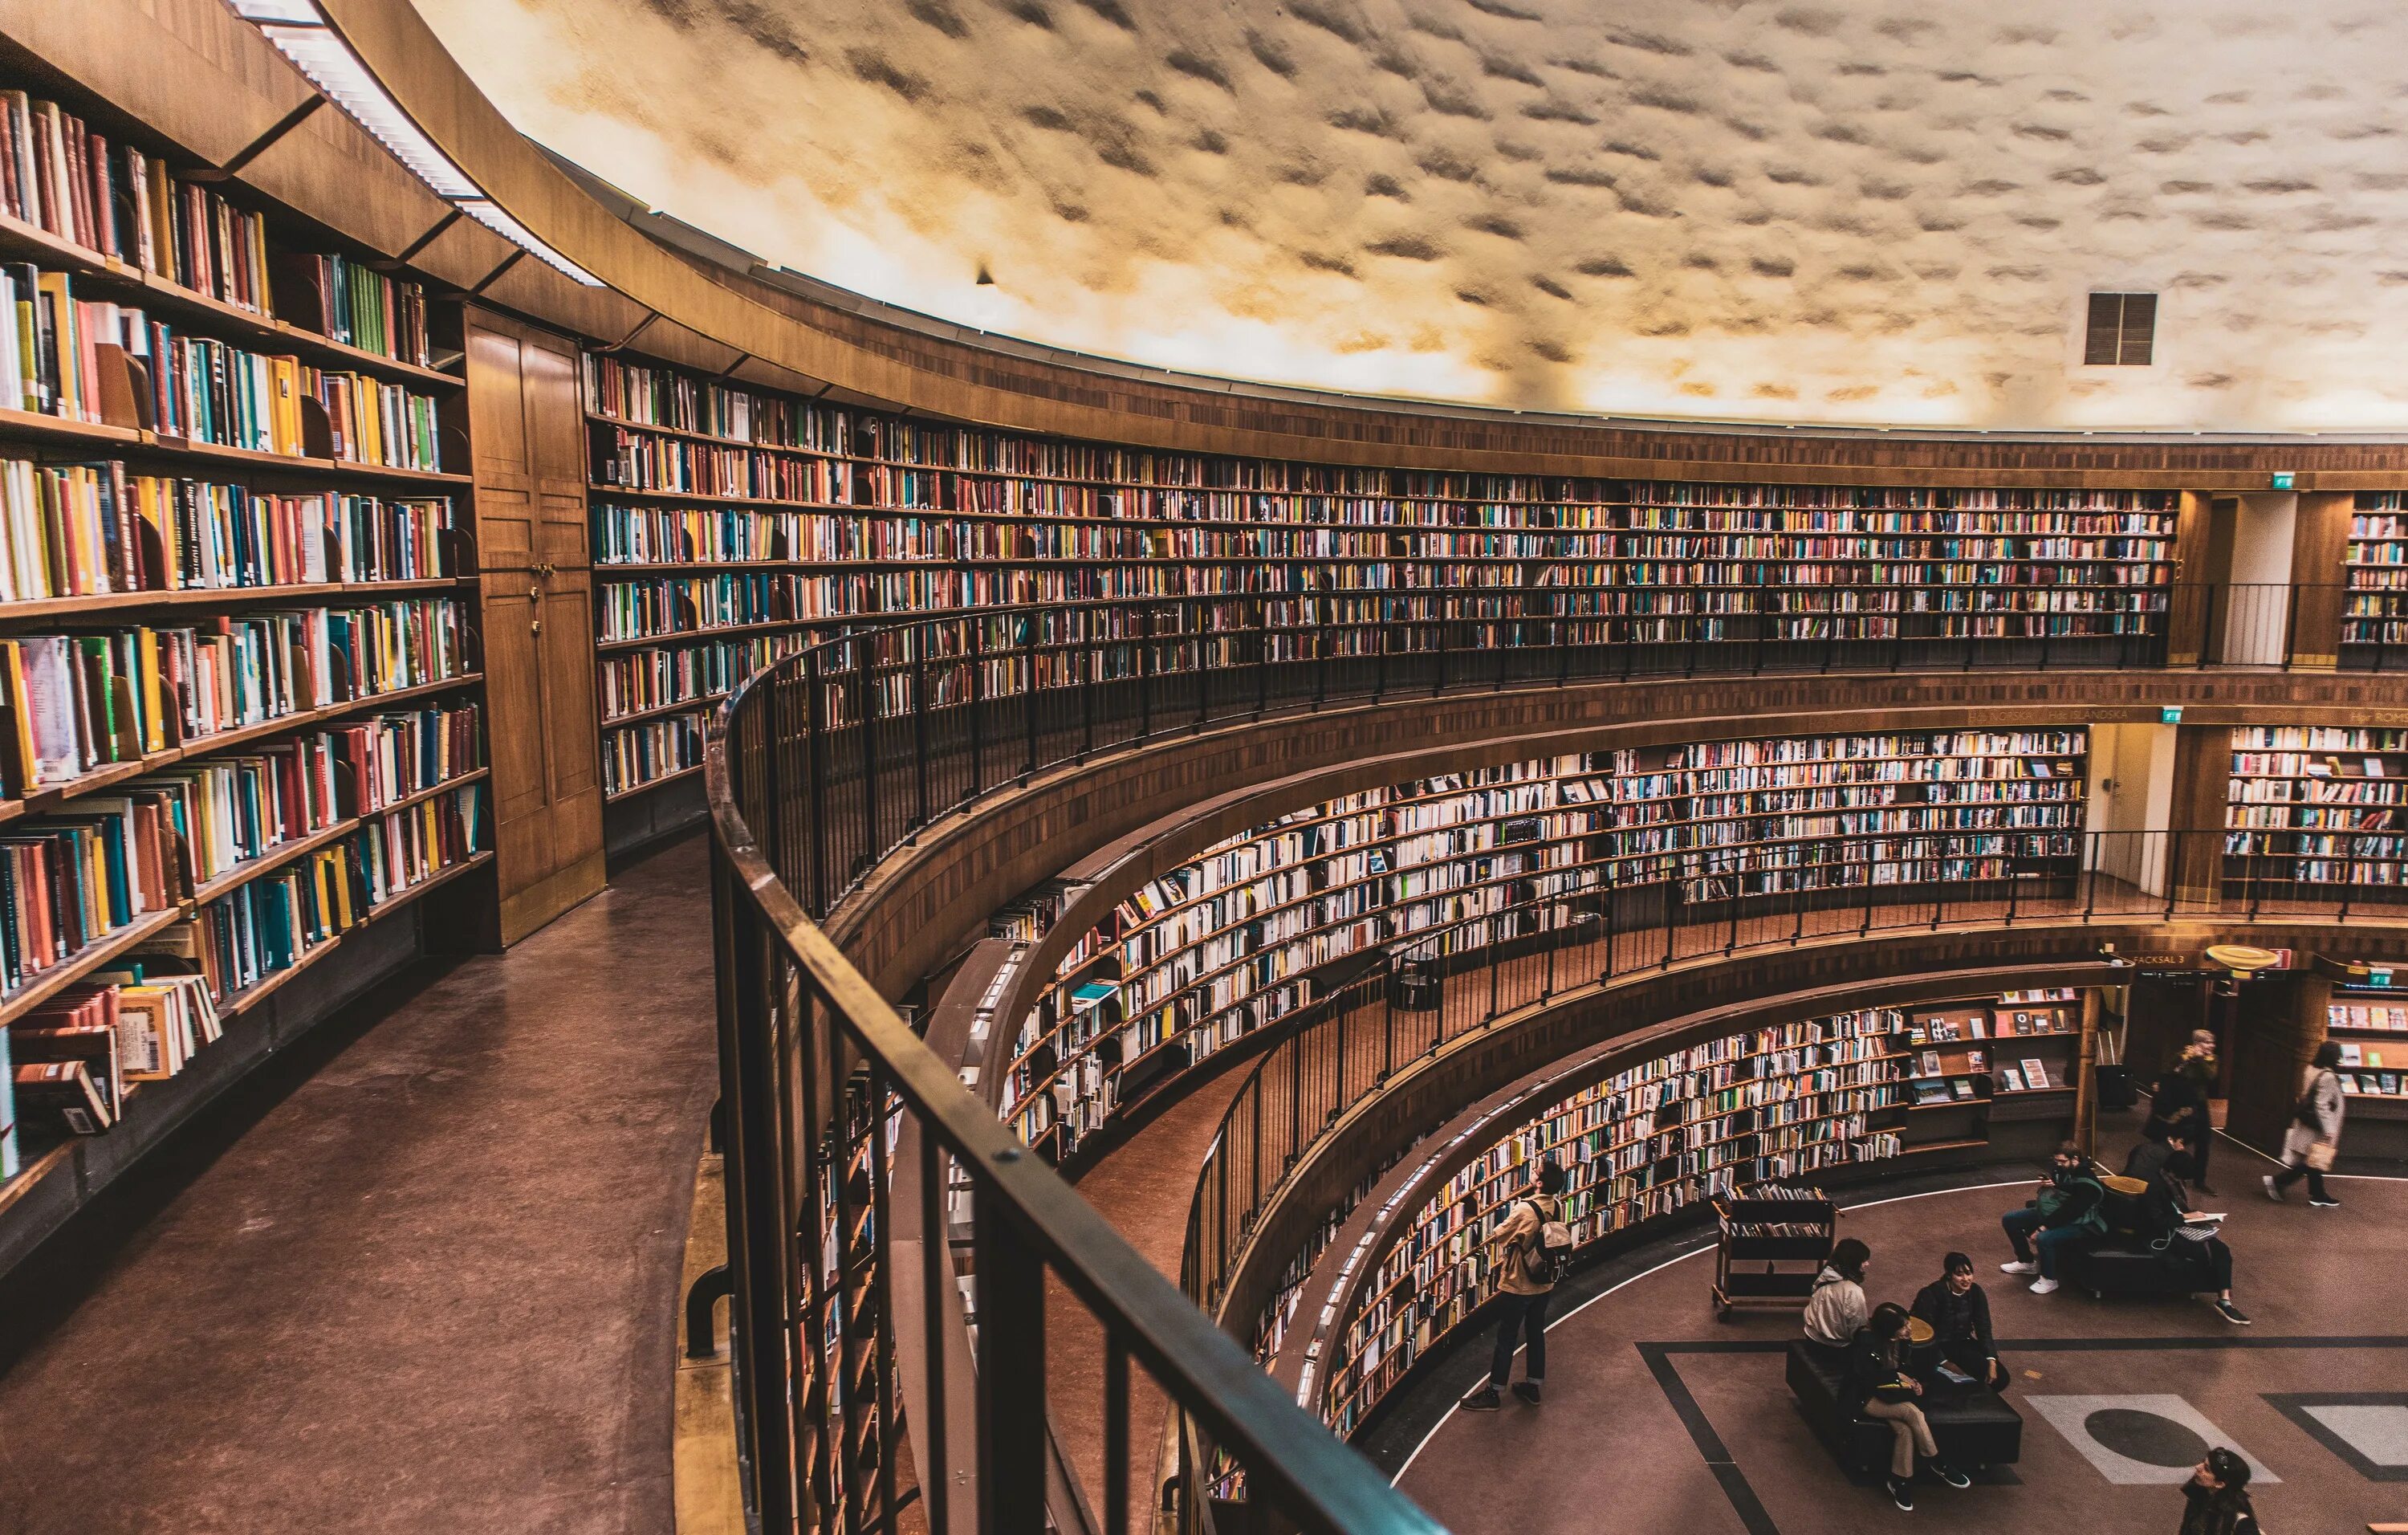 This is our library. Библиотека «University Club Library», Нью- Йорк, США. (Peter Bond). Теологический зал библиотеки Страговского монастыря, Прага, Чехия. Крупные библиотеки. Библиотека фото.